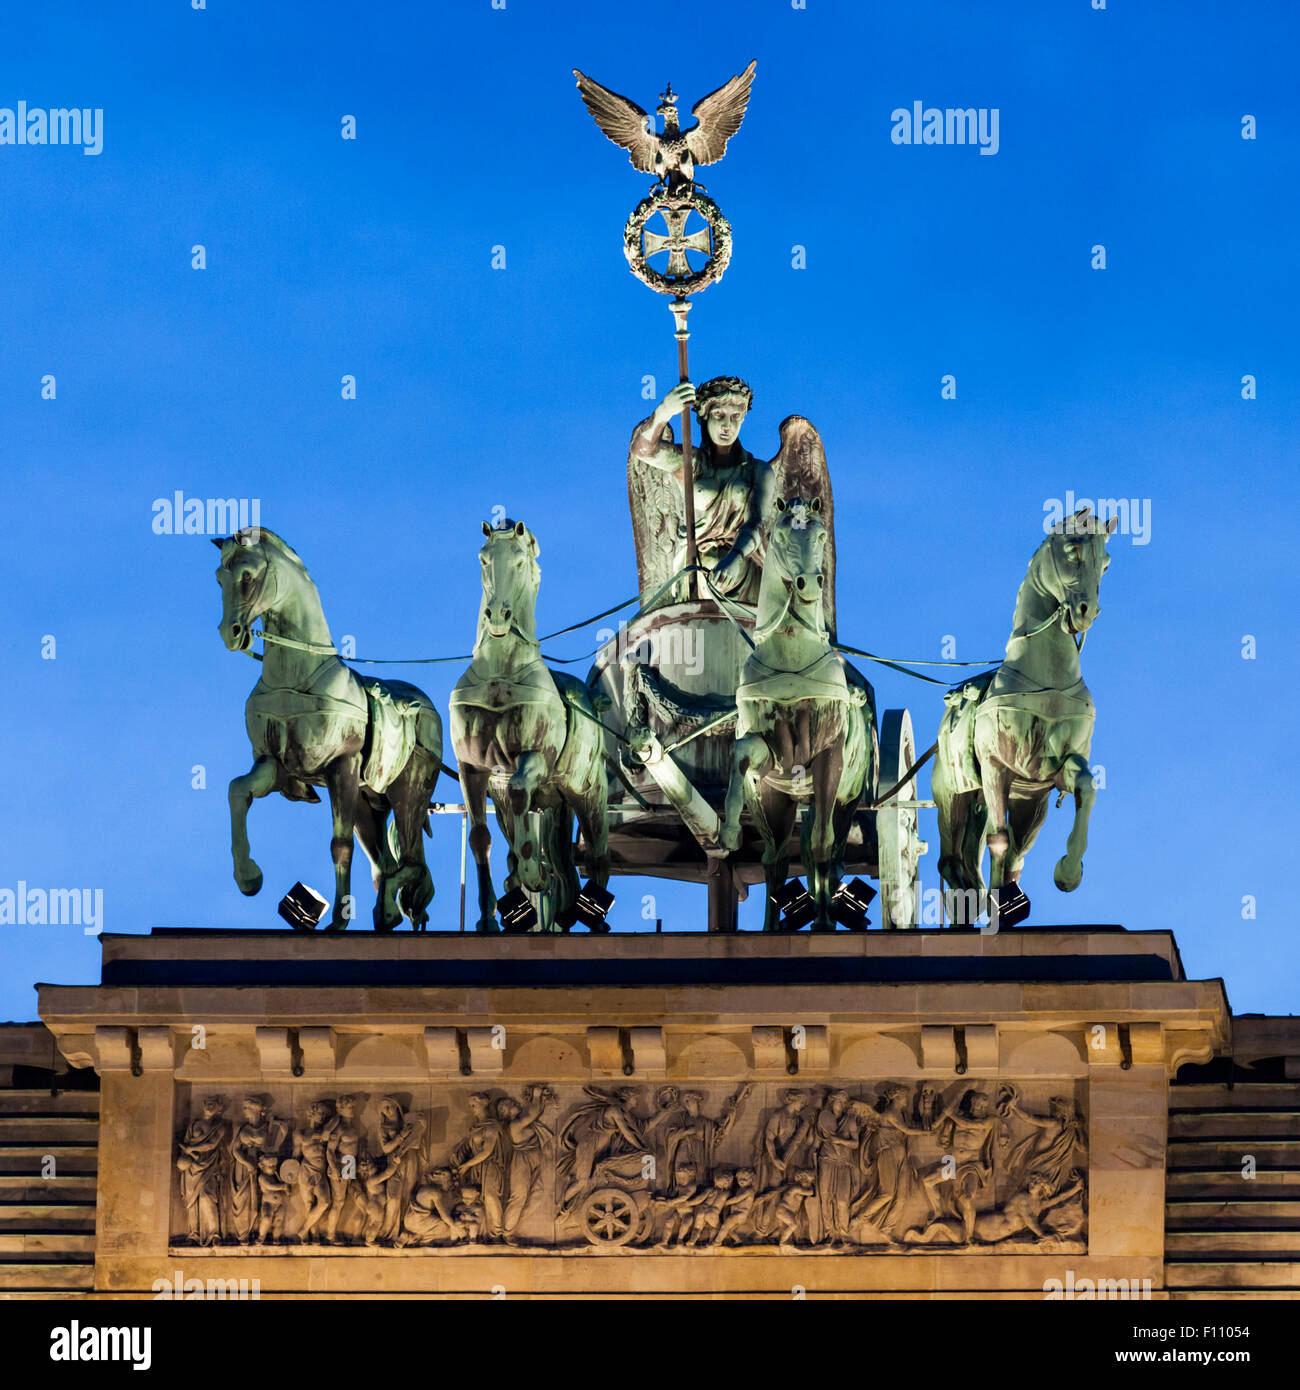 Vue nocturne de Quadriga en bronze (char tiré par quatre chevaux) au sommet de la porte de Brandebourg à Pariser Platz, Berlin, Allemagne Banque D'Images